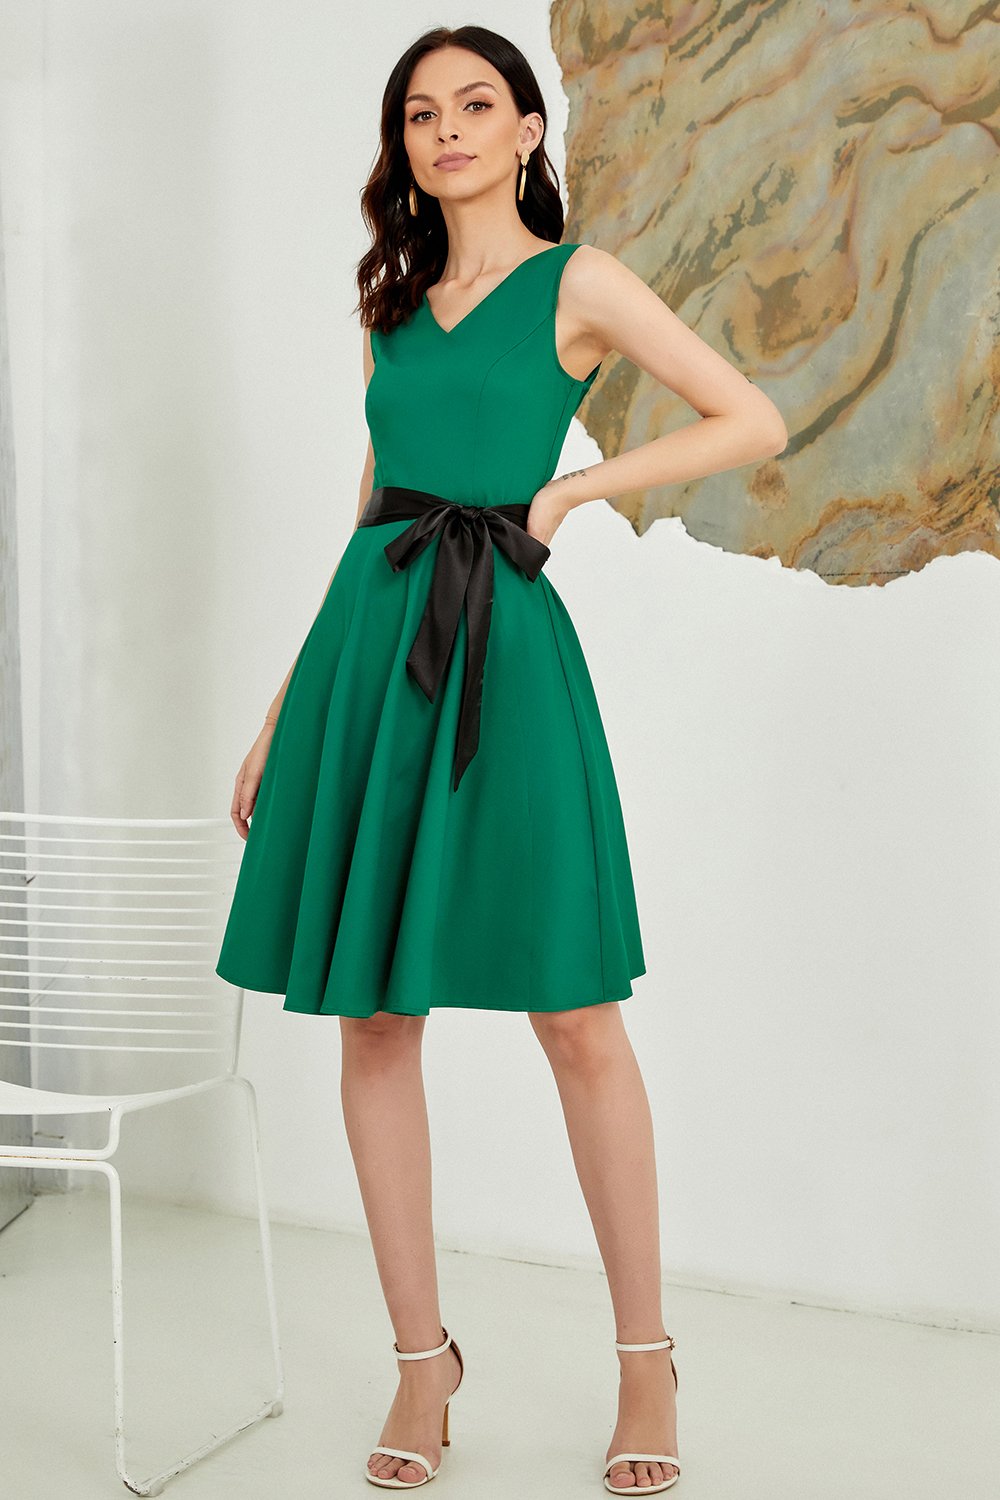 V Neck Green Belted 1950s Dress